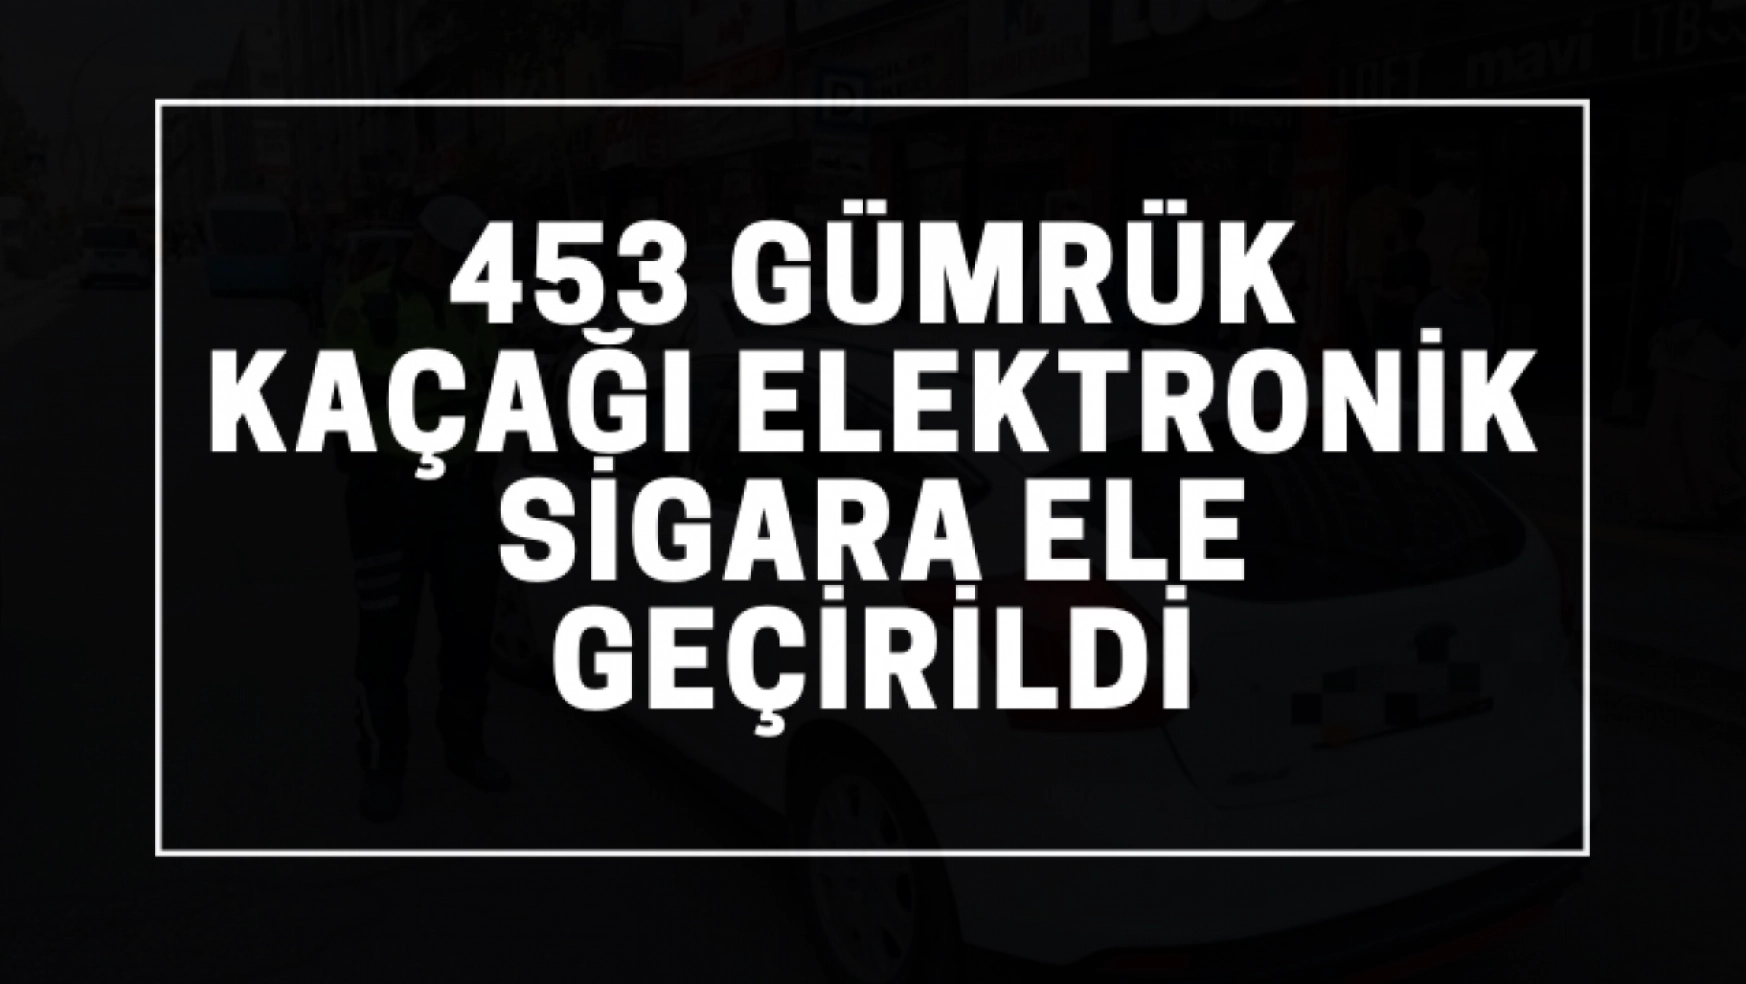 453 gümrük kaçağı elektronik sigara ele geçirildi